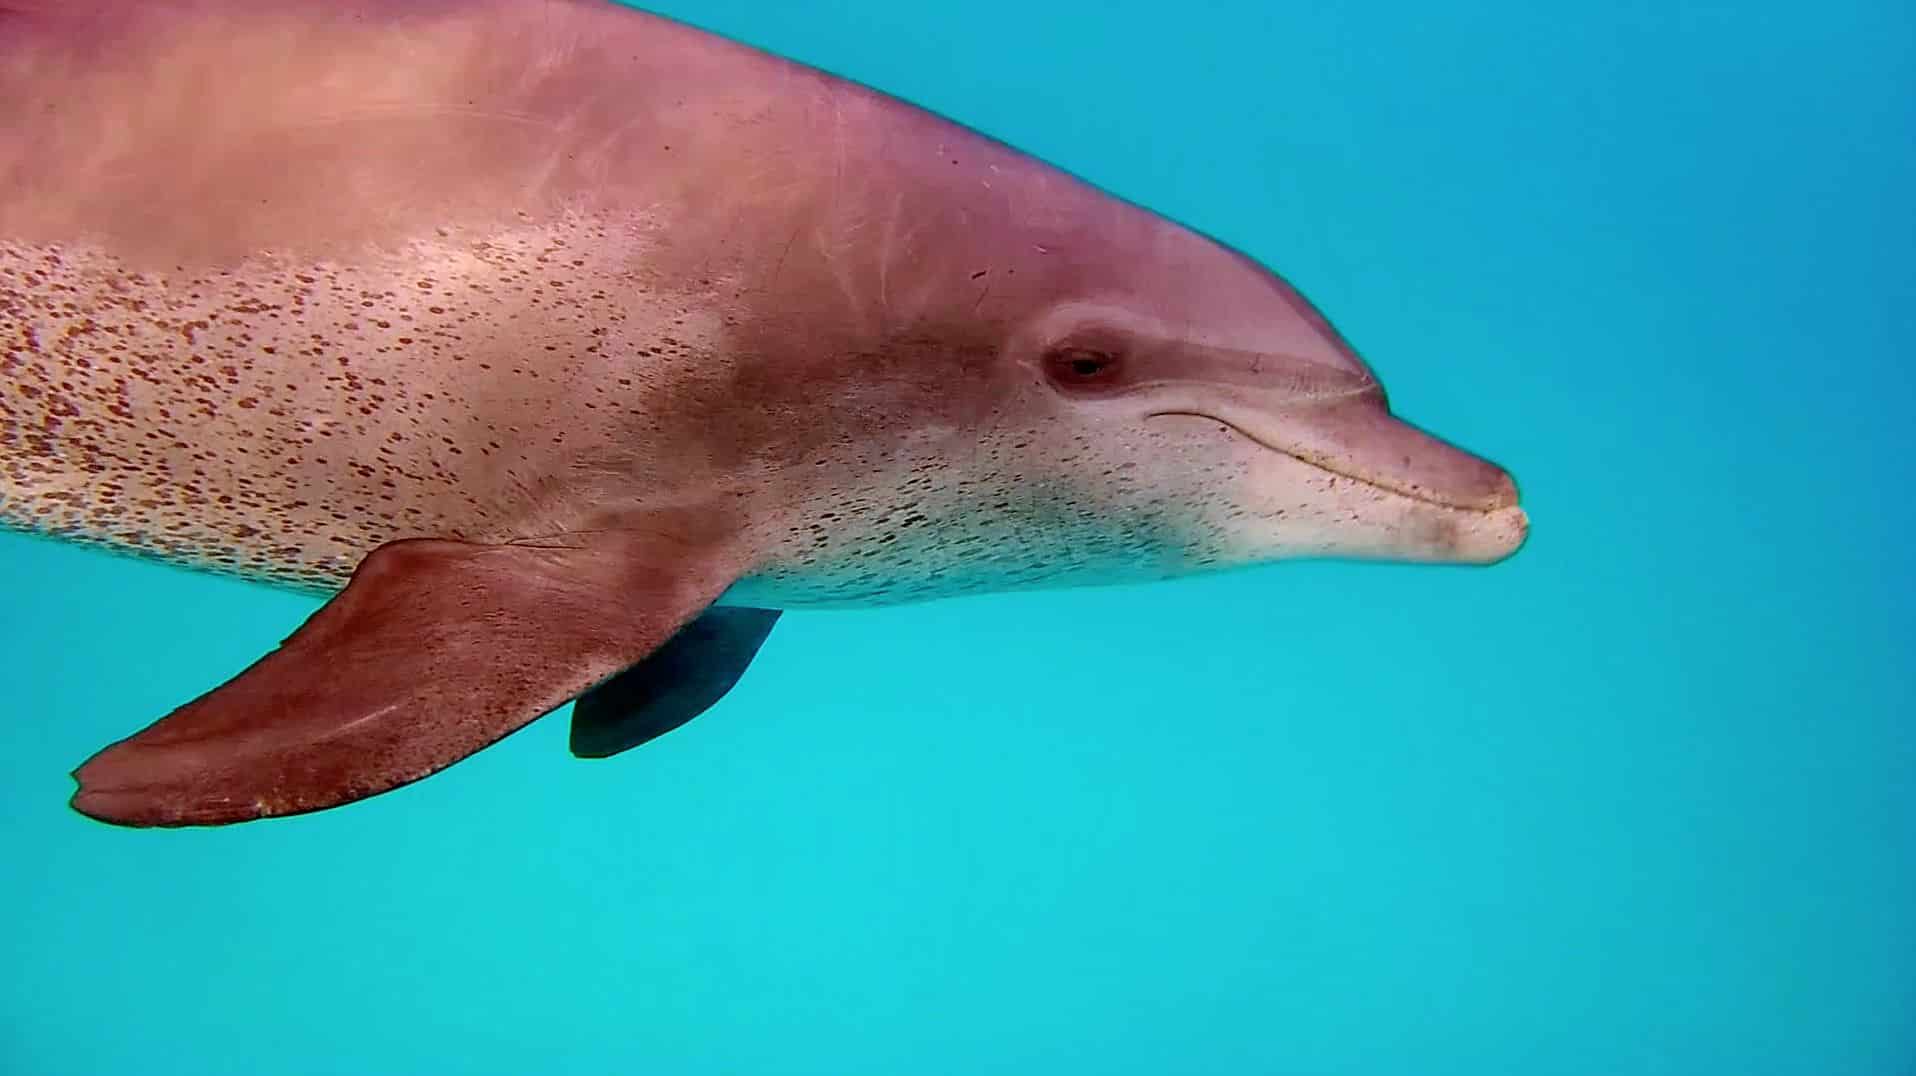 Zwem met gratis dolfijnen: oog in oog met de tuimelaar. Foto: Sascha Tegtmeyer